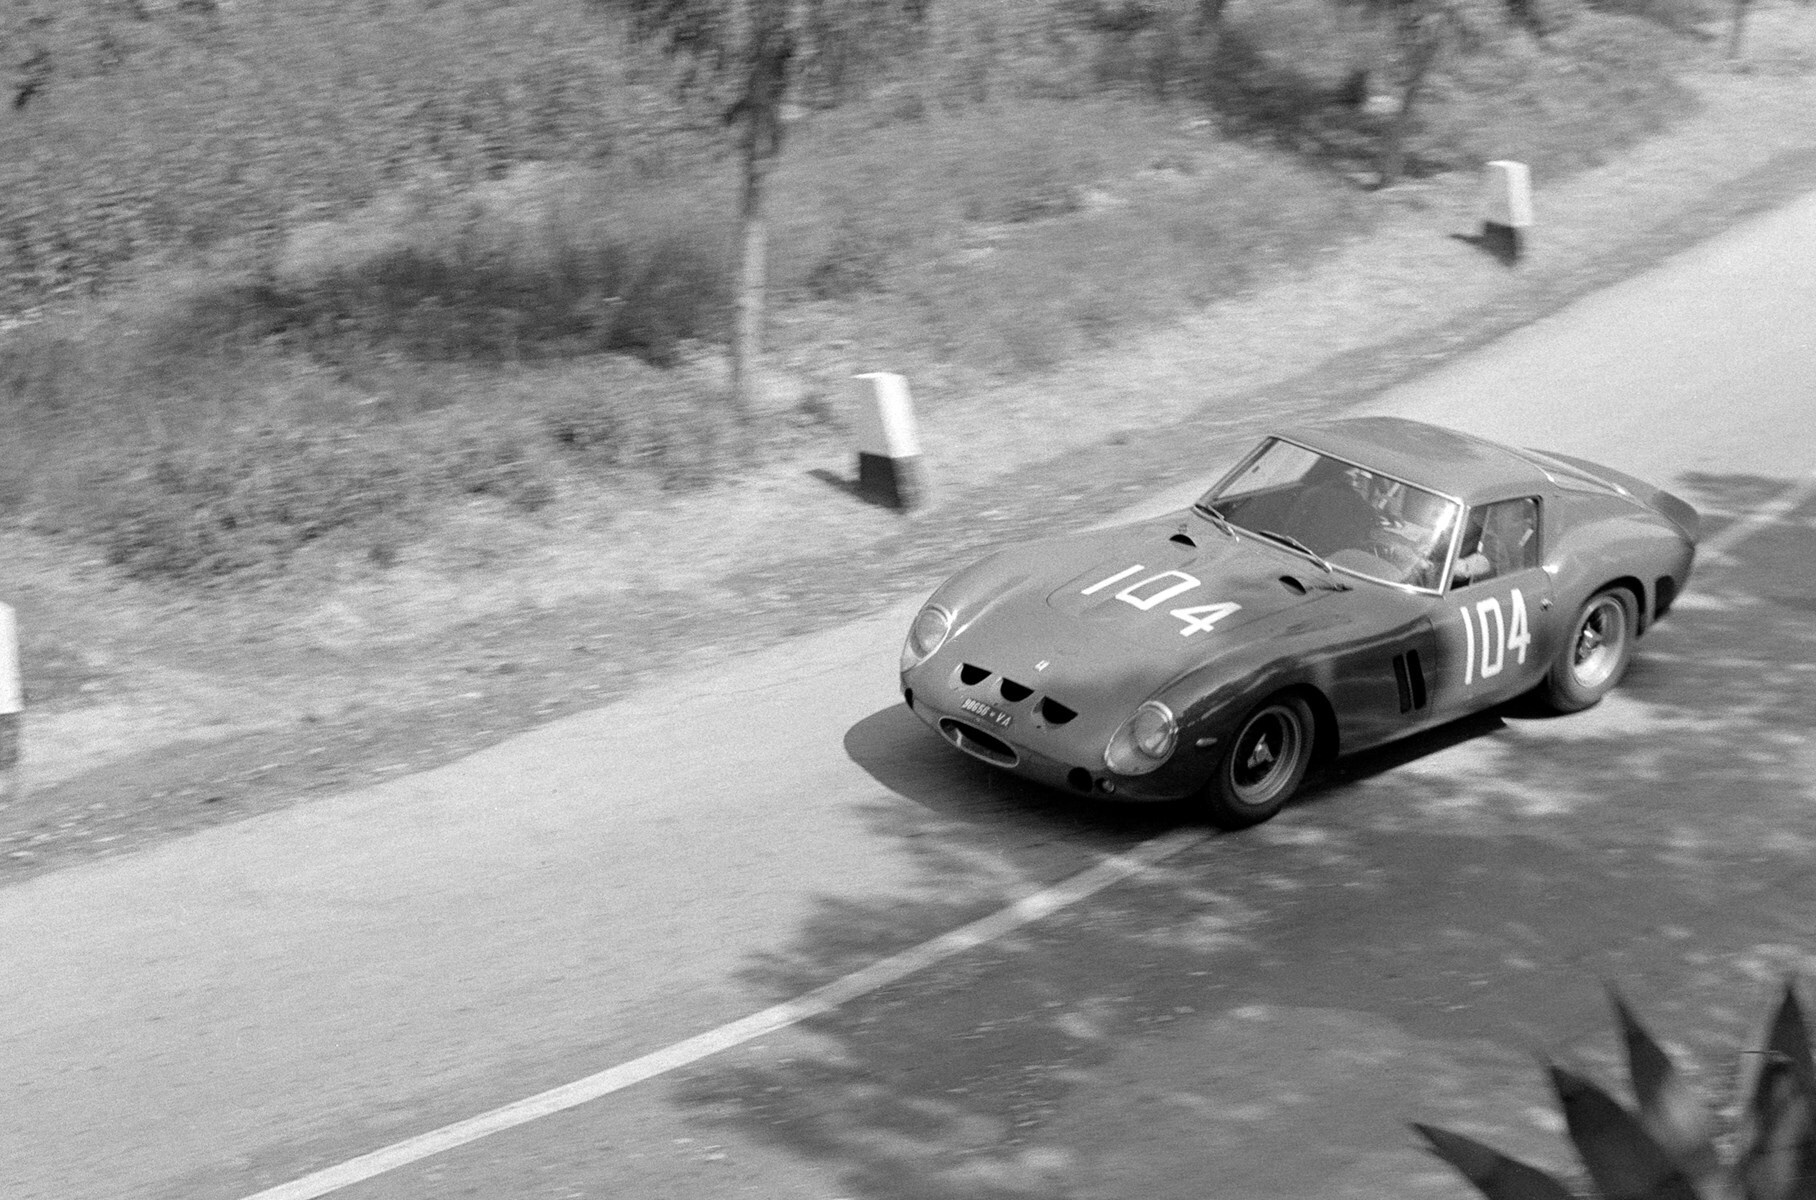 Второй владелец этой машины Джанни Булгари, глава одноимённой ювелирной компании, на трассе дорожной гонки Targa Florio 1963 года (1 место в классе, 4 место в абсолютном зачёте)